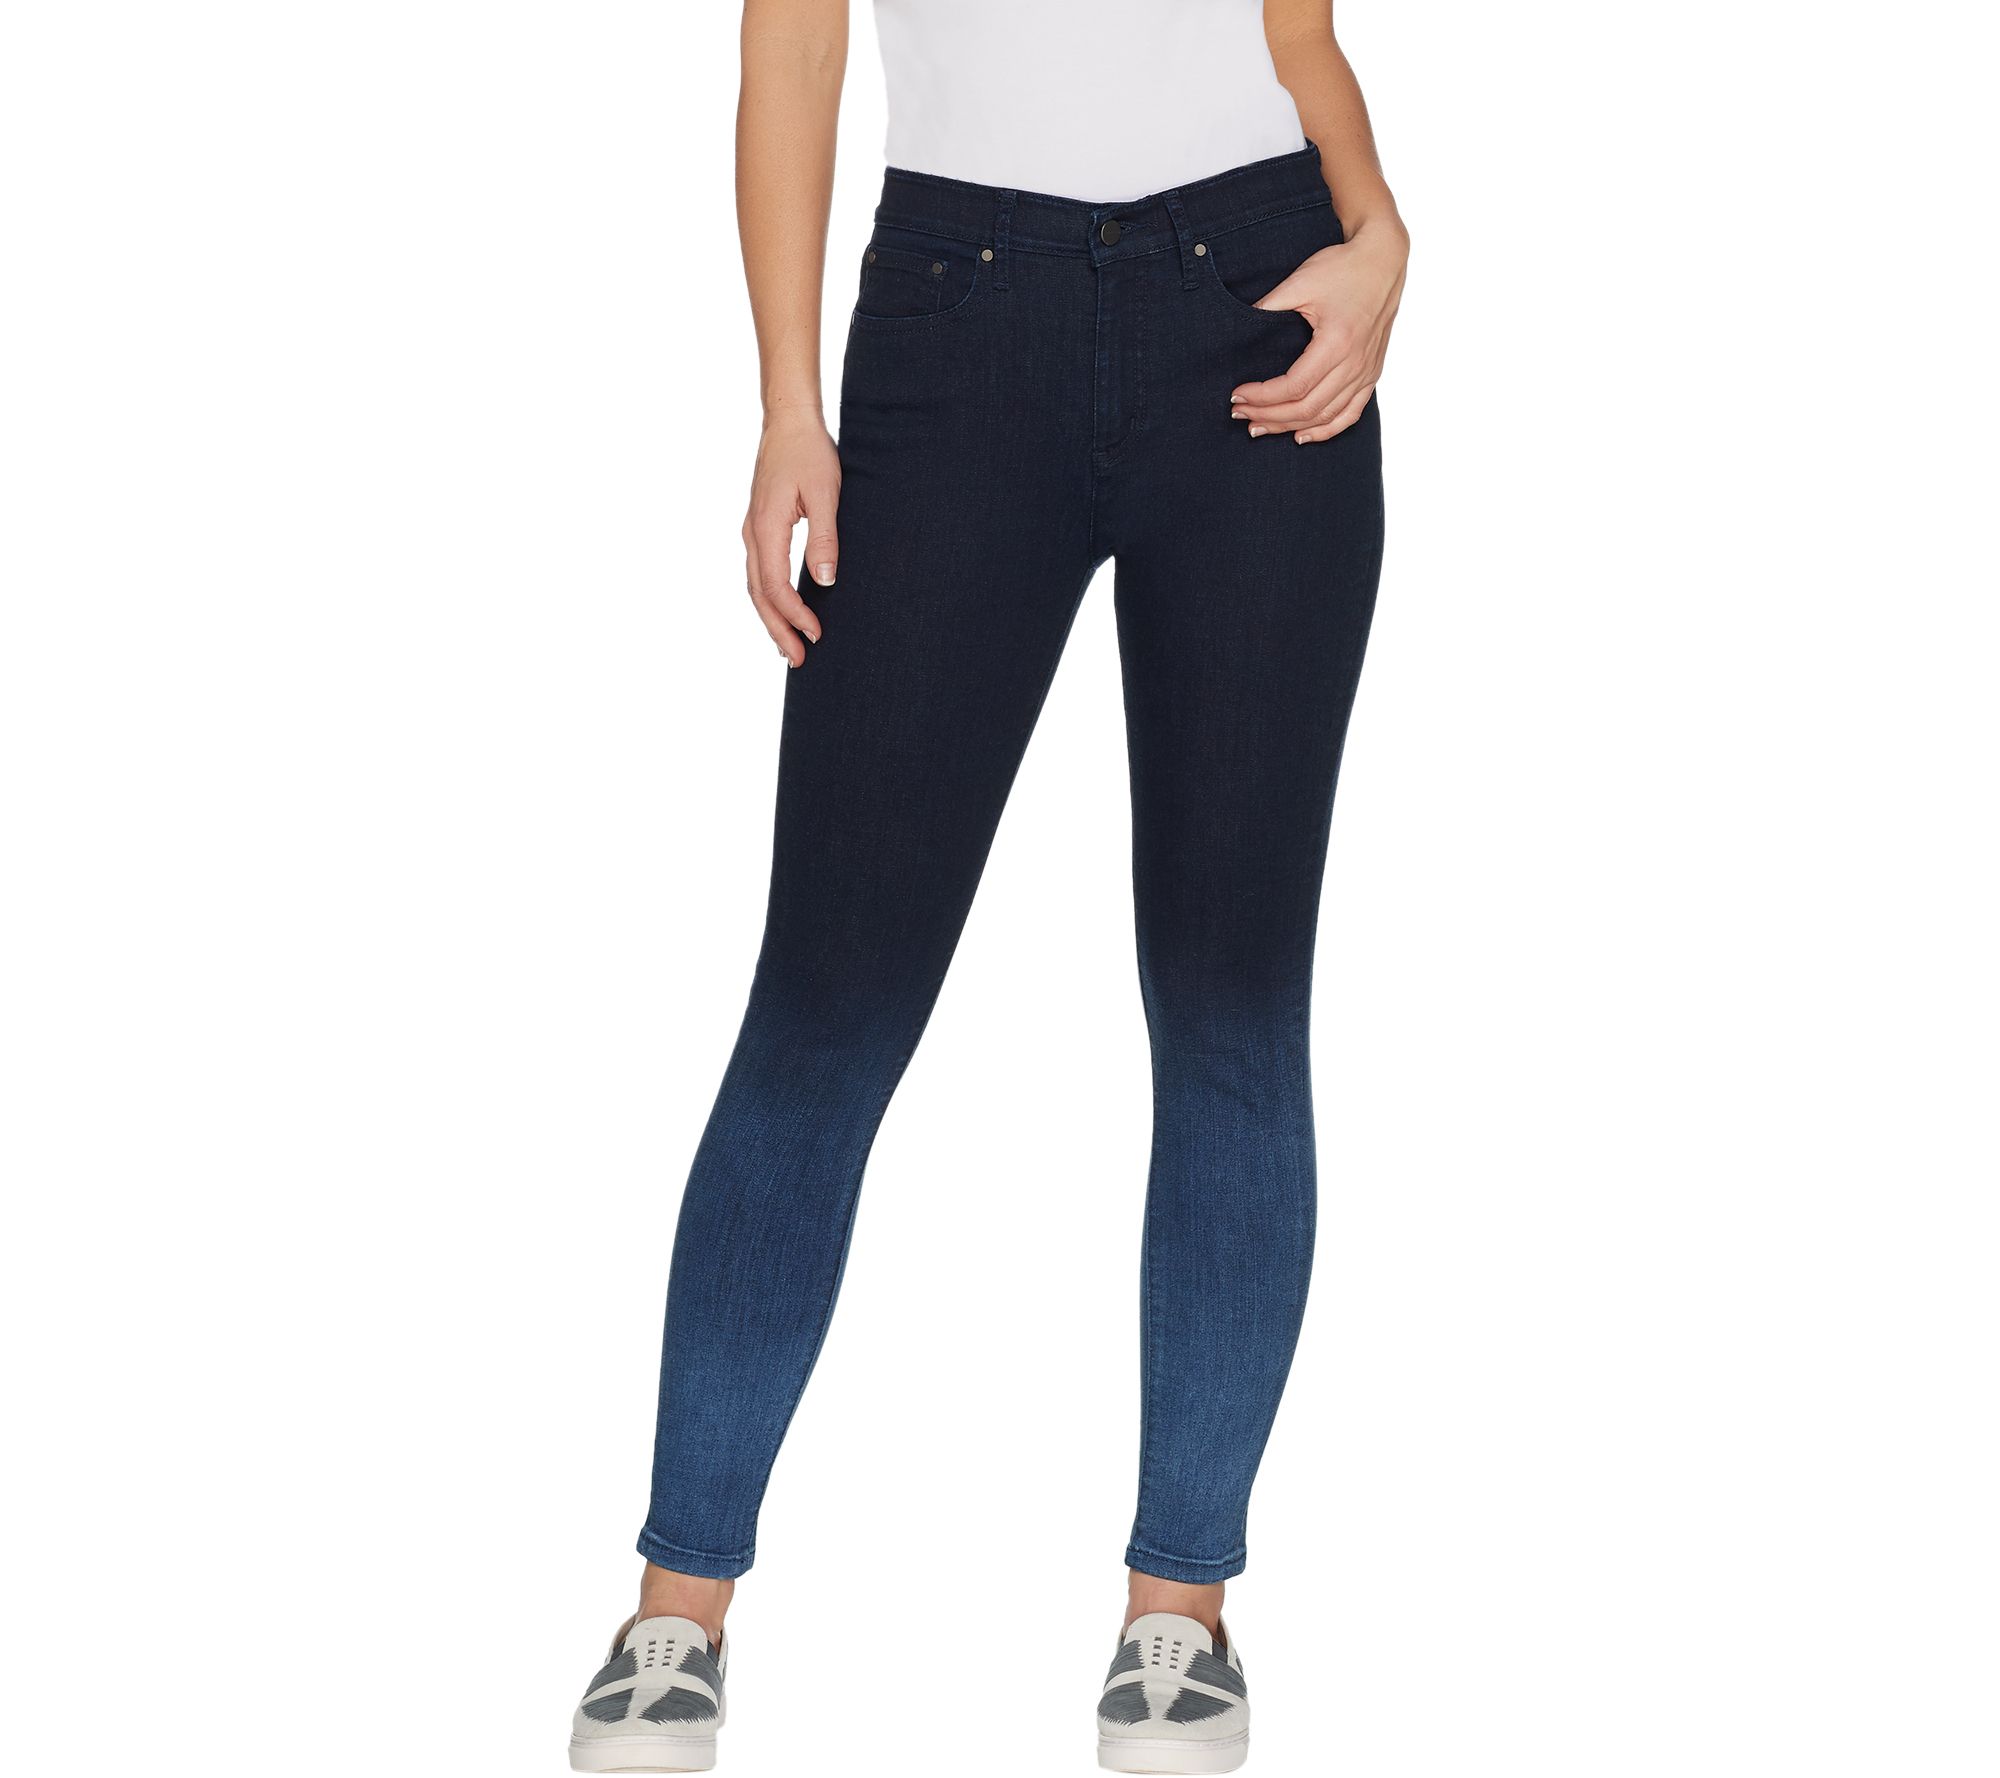 H by Halston Premier Denim Petite Ankle Length Ombre Jeans - QVC.com